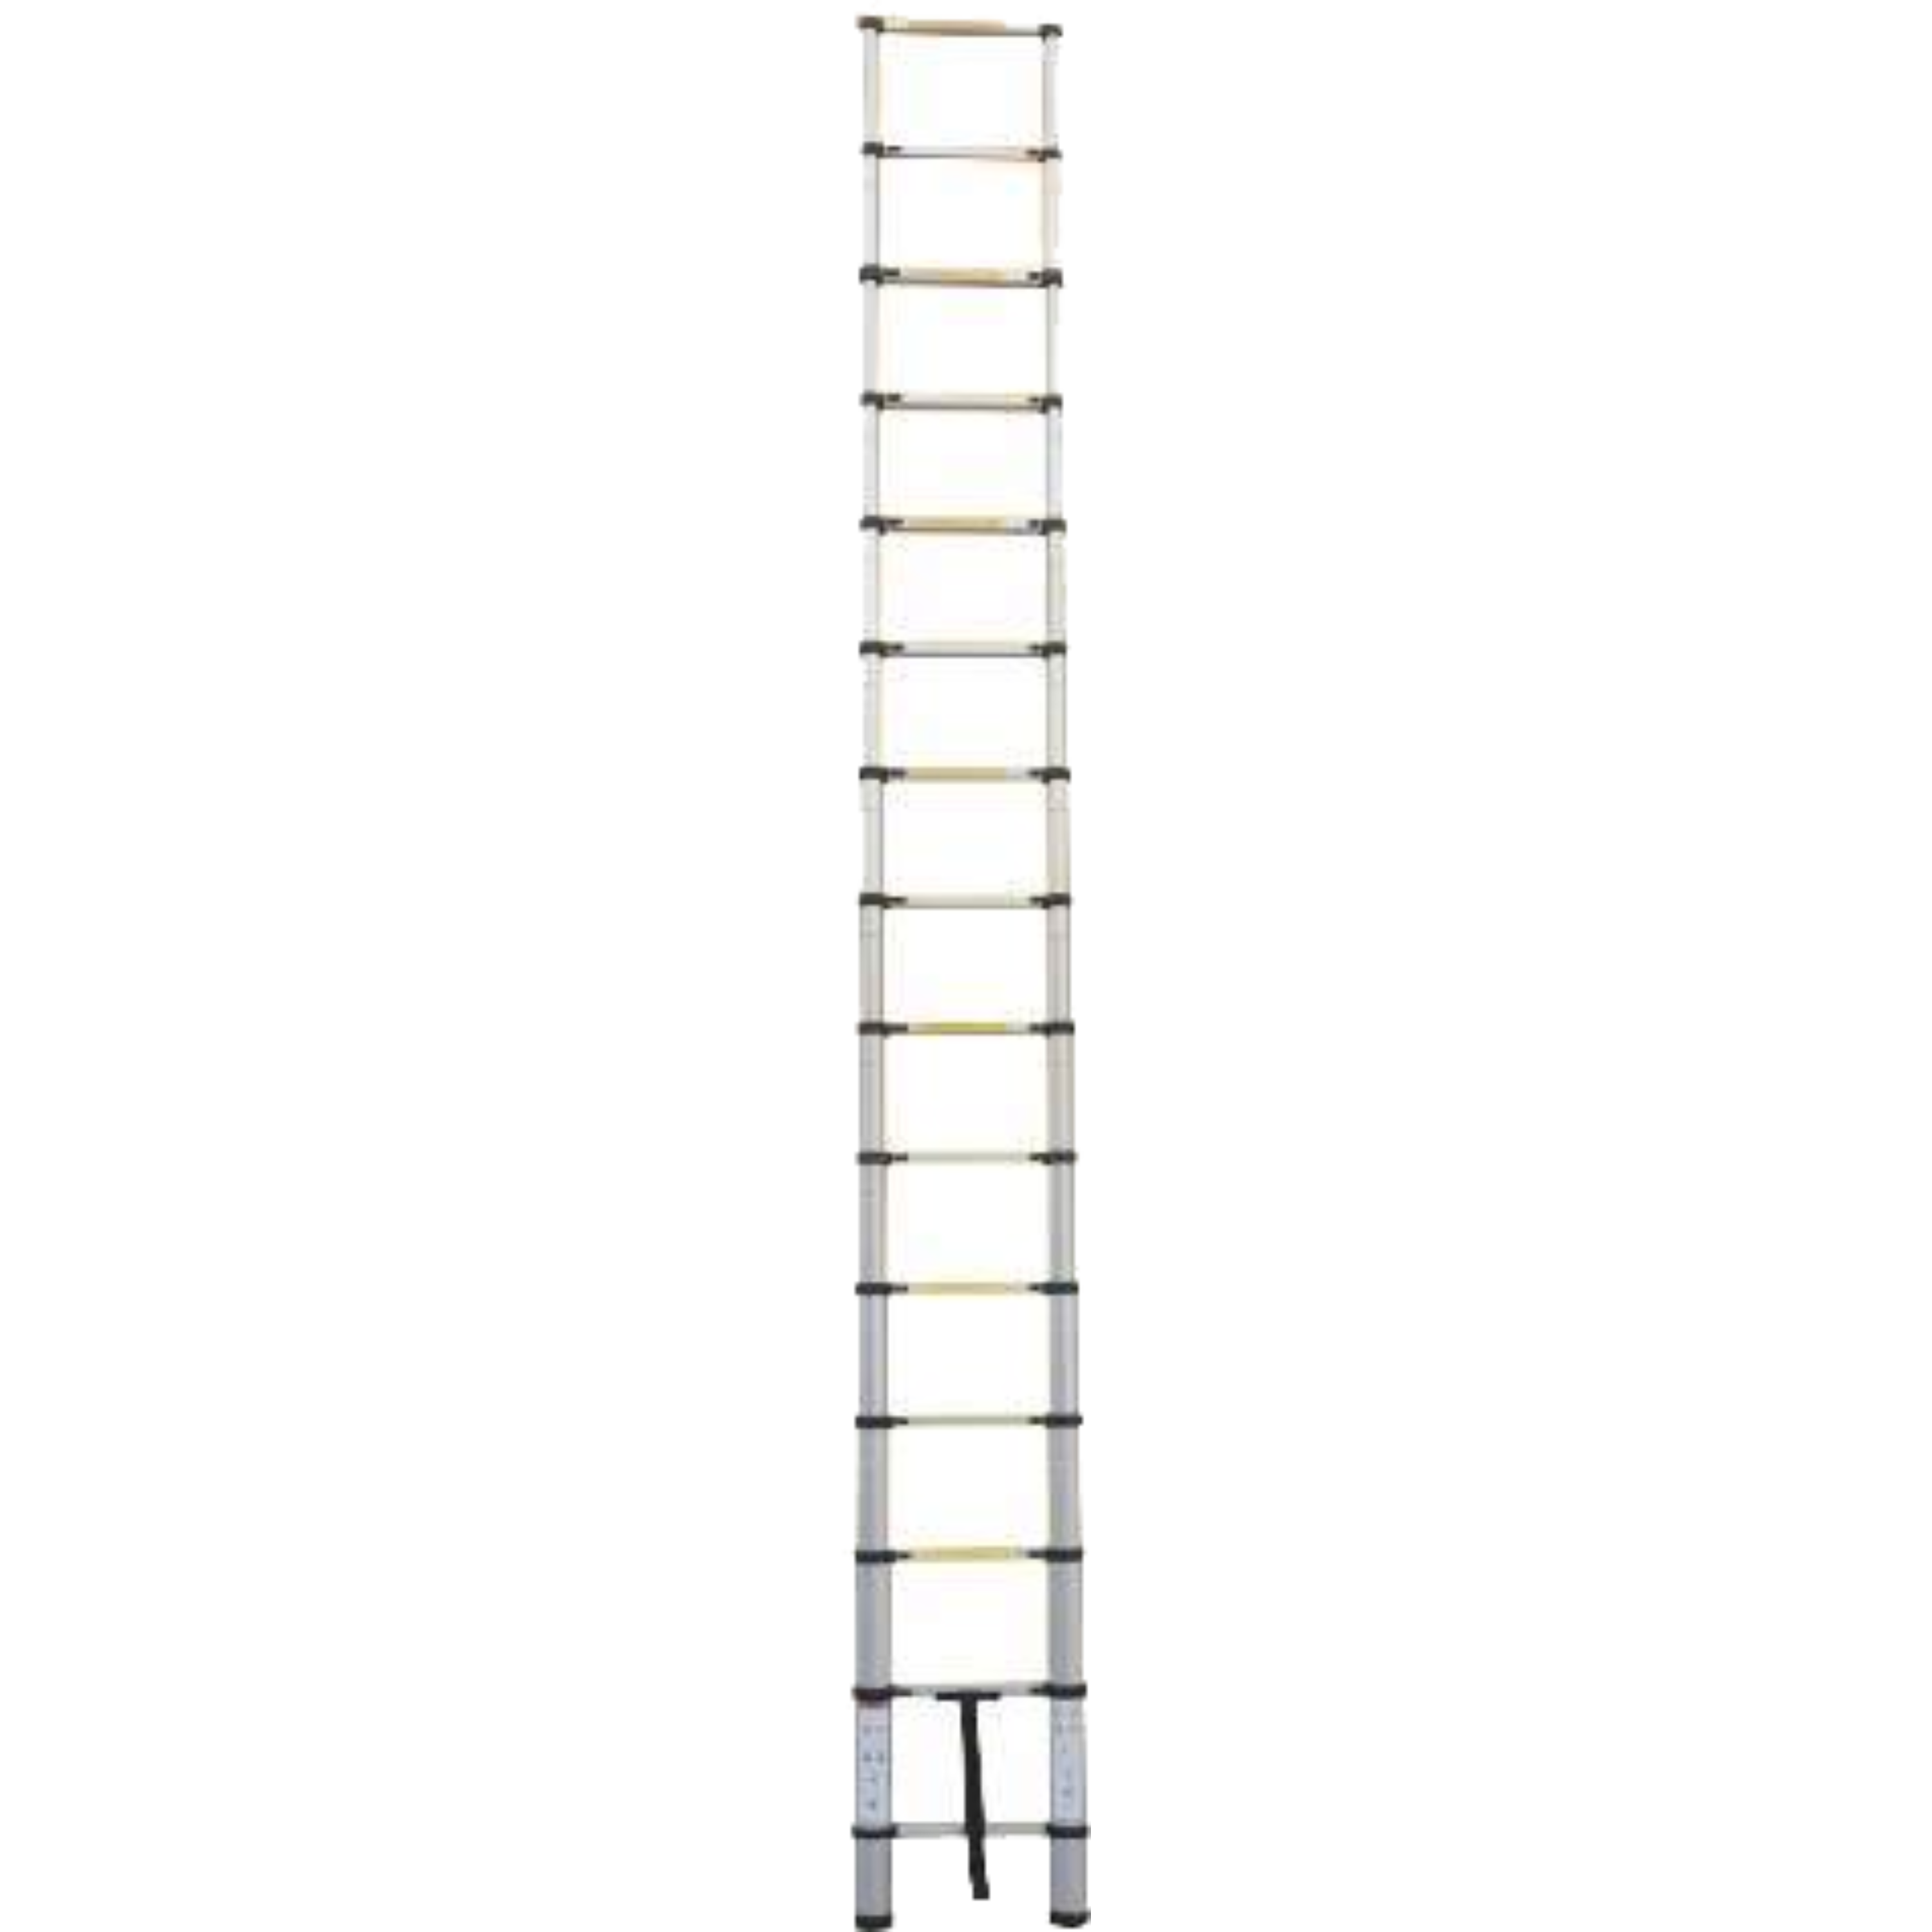 סולם טלסקופי נשען מתקפל 11 שלבים דגם KR-3.2X מבית Krauss